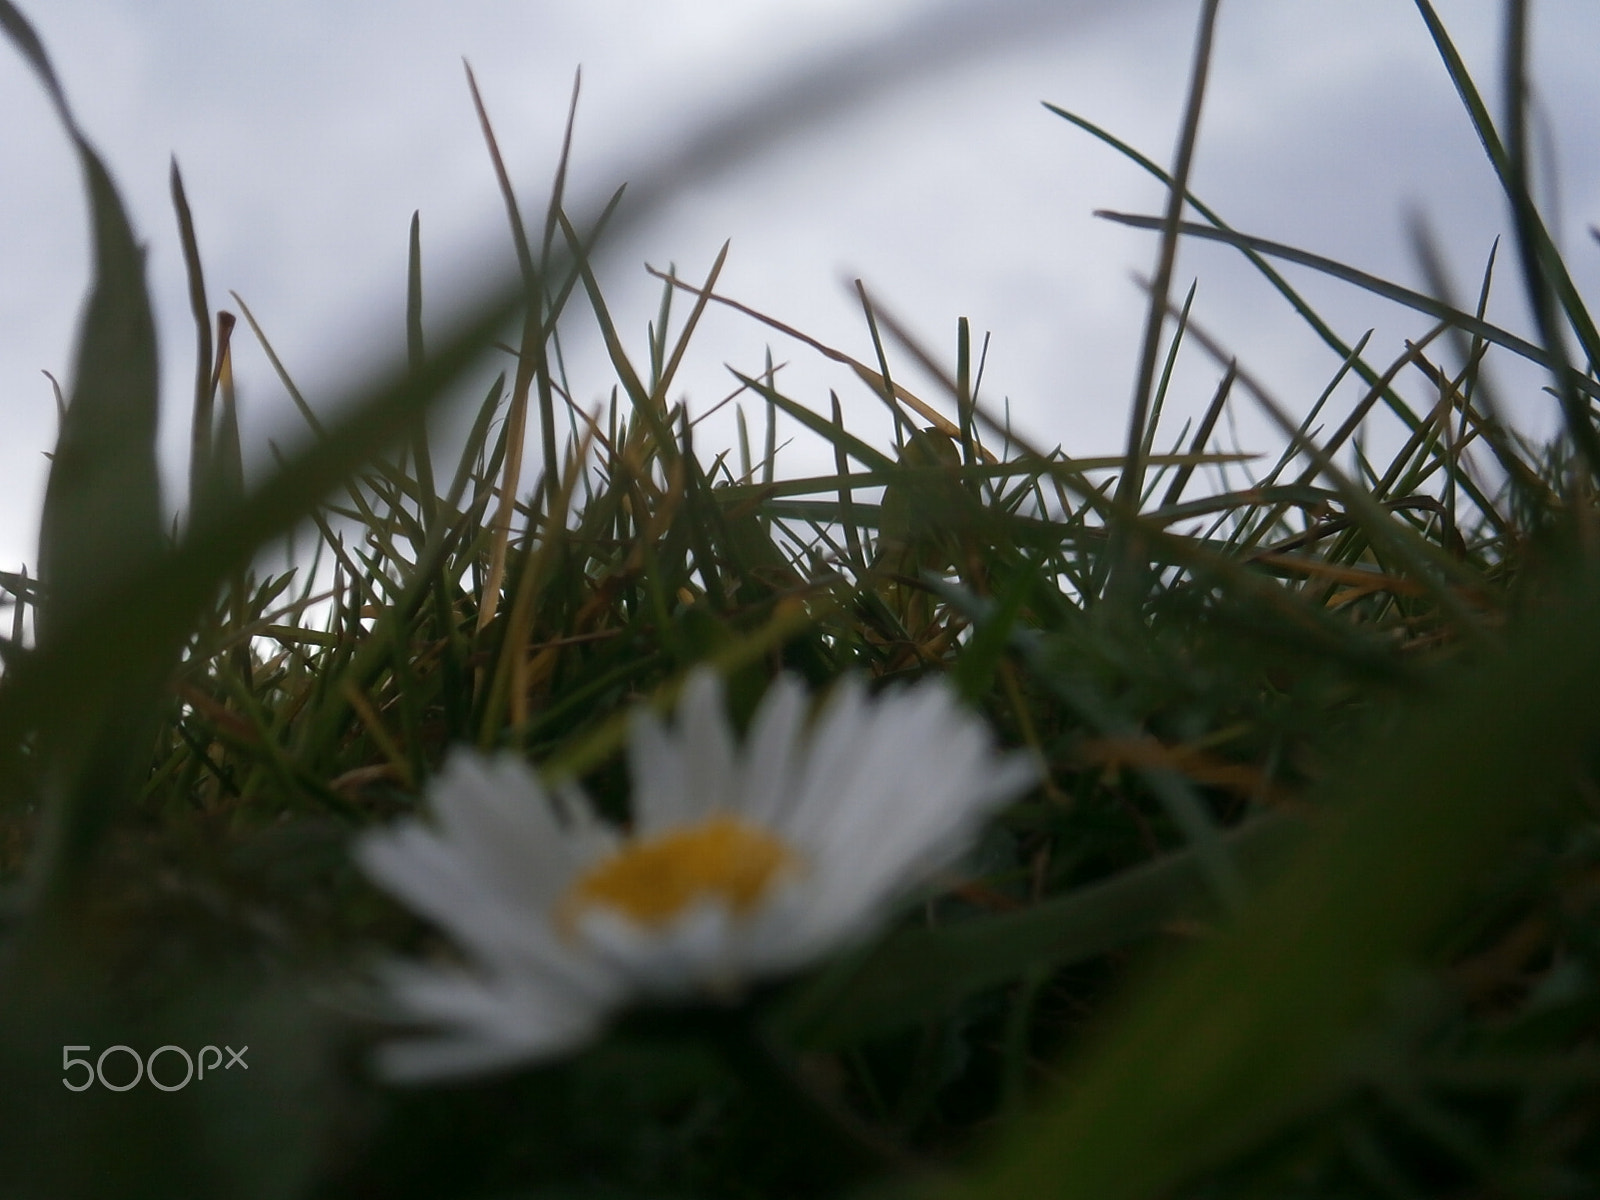 Olympus VG170 sample photo. A simple daisy photography